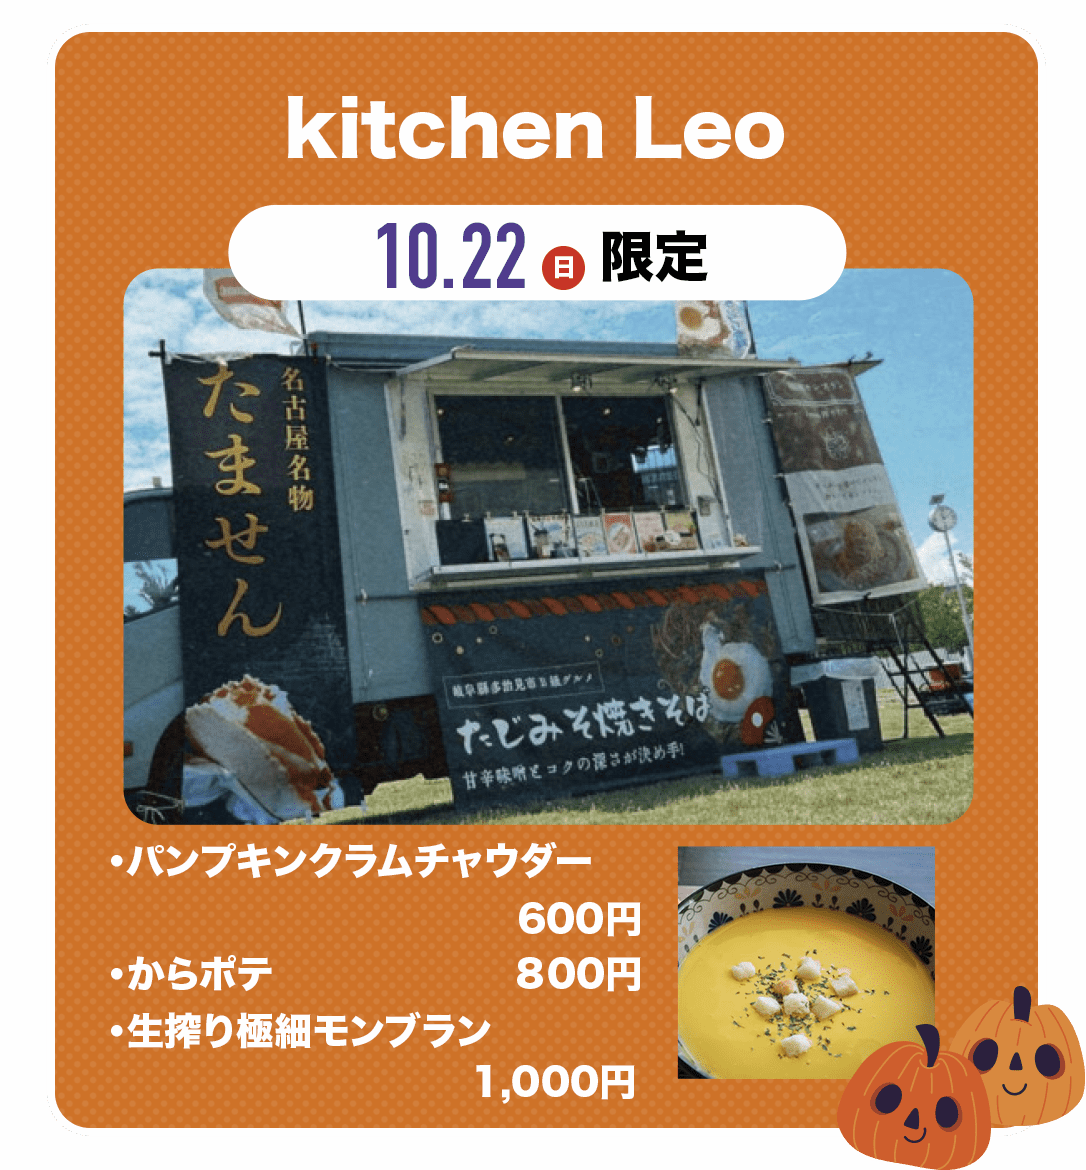 kitchen Leo